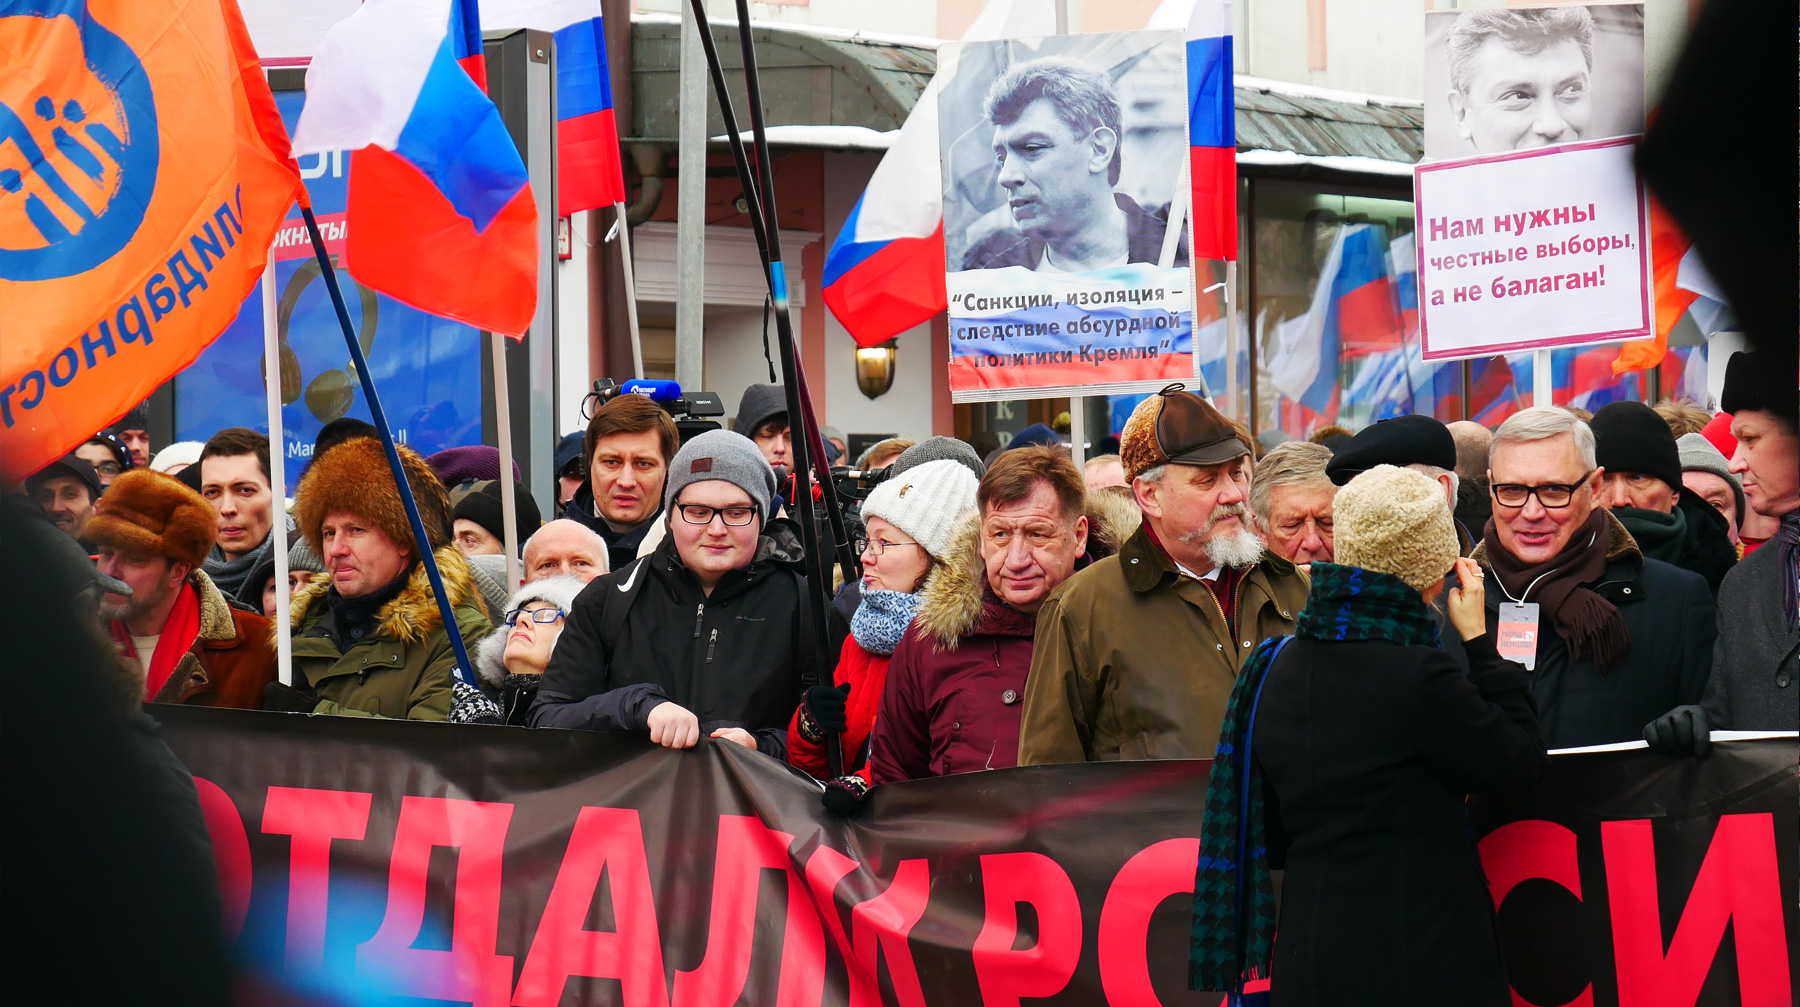 Марш памяти Немцова. Митинг за честные выборы Немцов. Z марш памяти. Поэтический марш памяти. Против изоляции